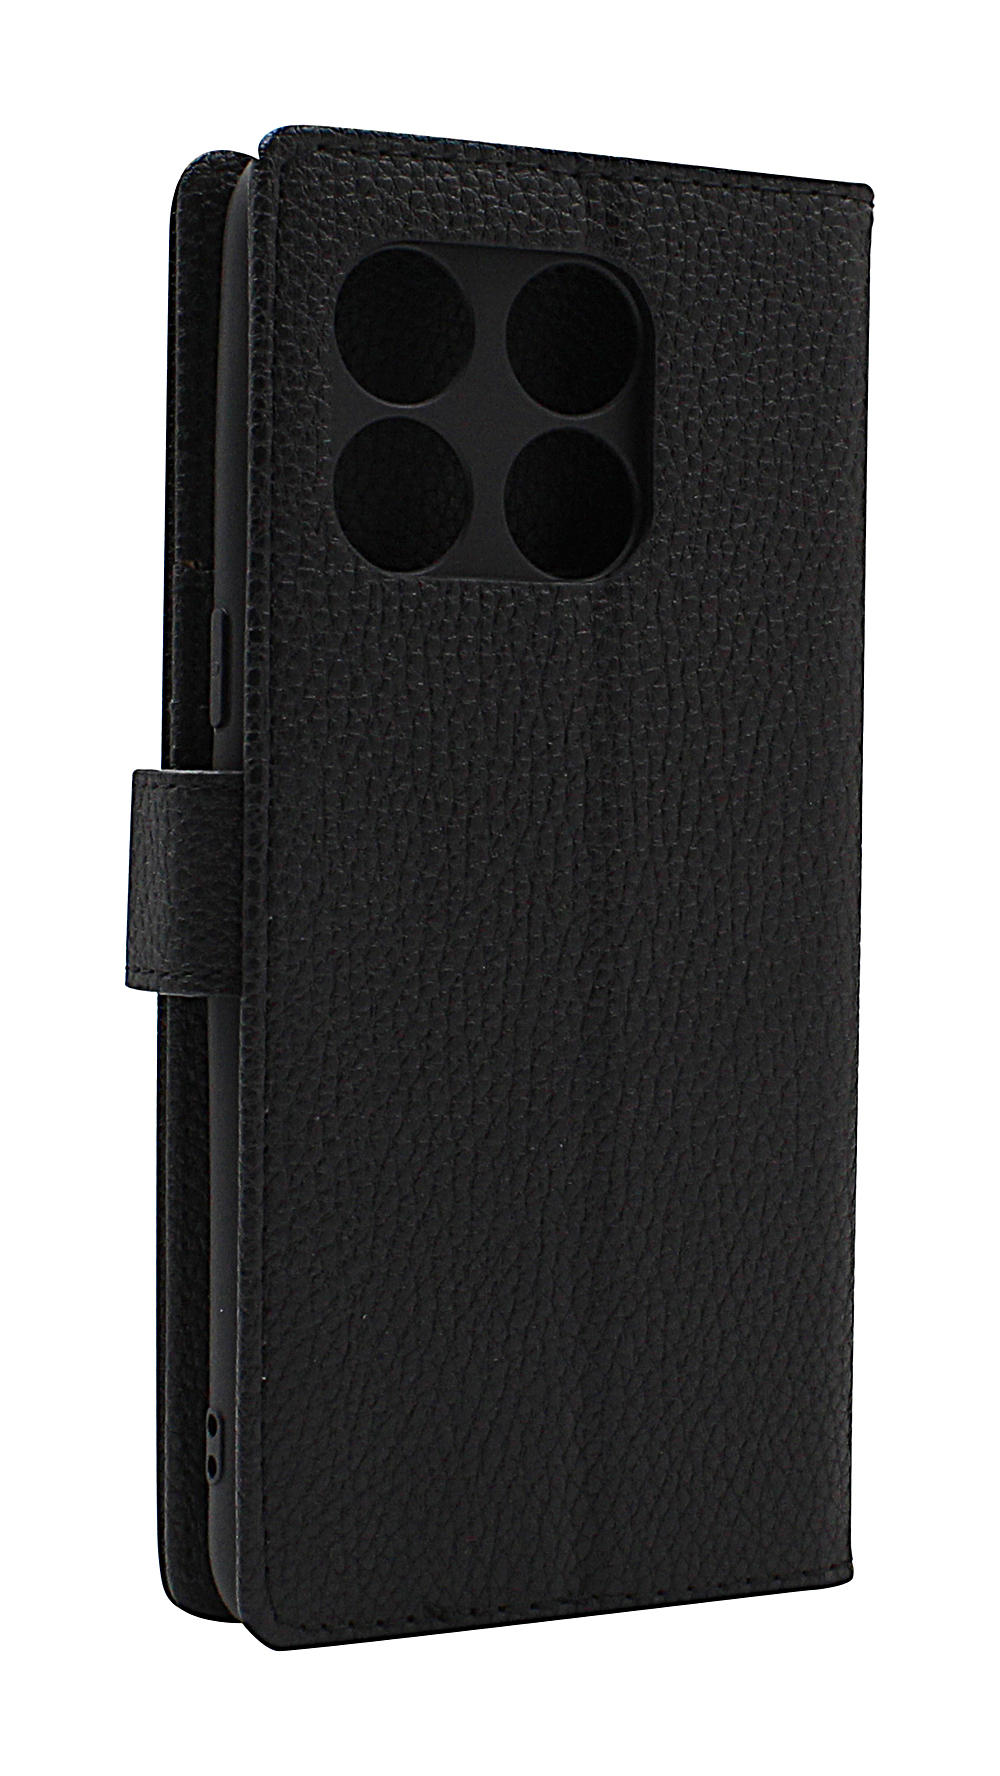 billigamobilskydd.seNew Standcase Wallet OnePlus 10T 5G